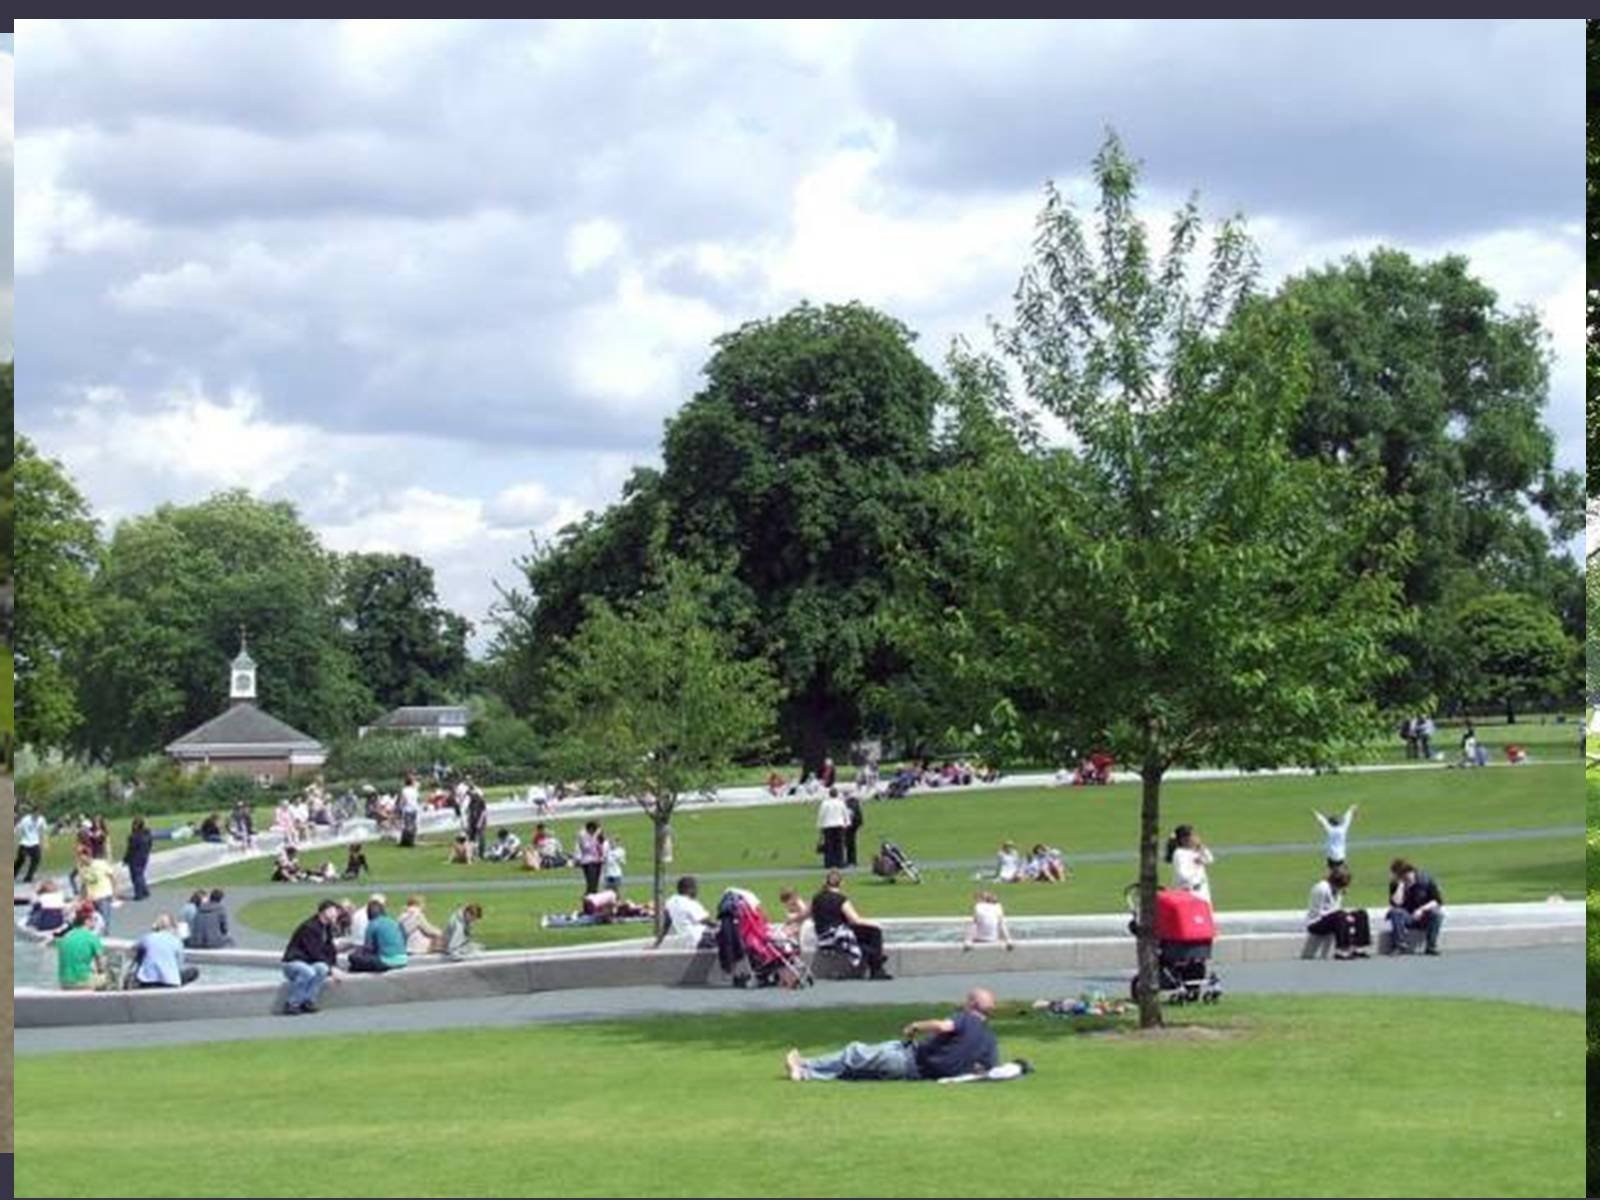 Парк ис. Гайд-парк (Hyde Park). Хайд парк в Лондоне. Гайд парк в Лондоне. Гайд-парк (Hyde Park), Лондон.